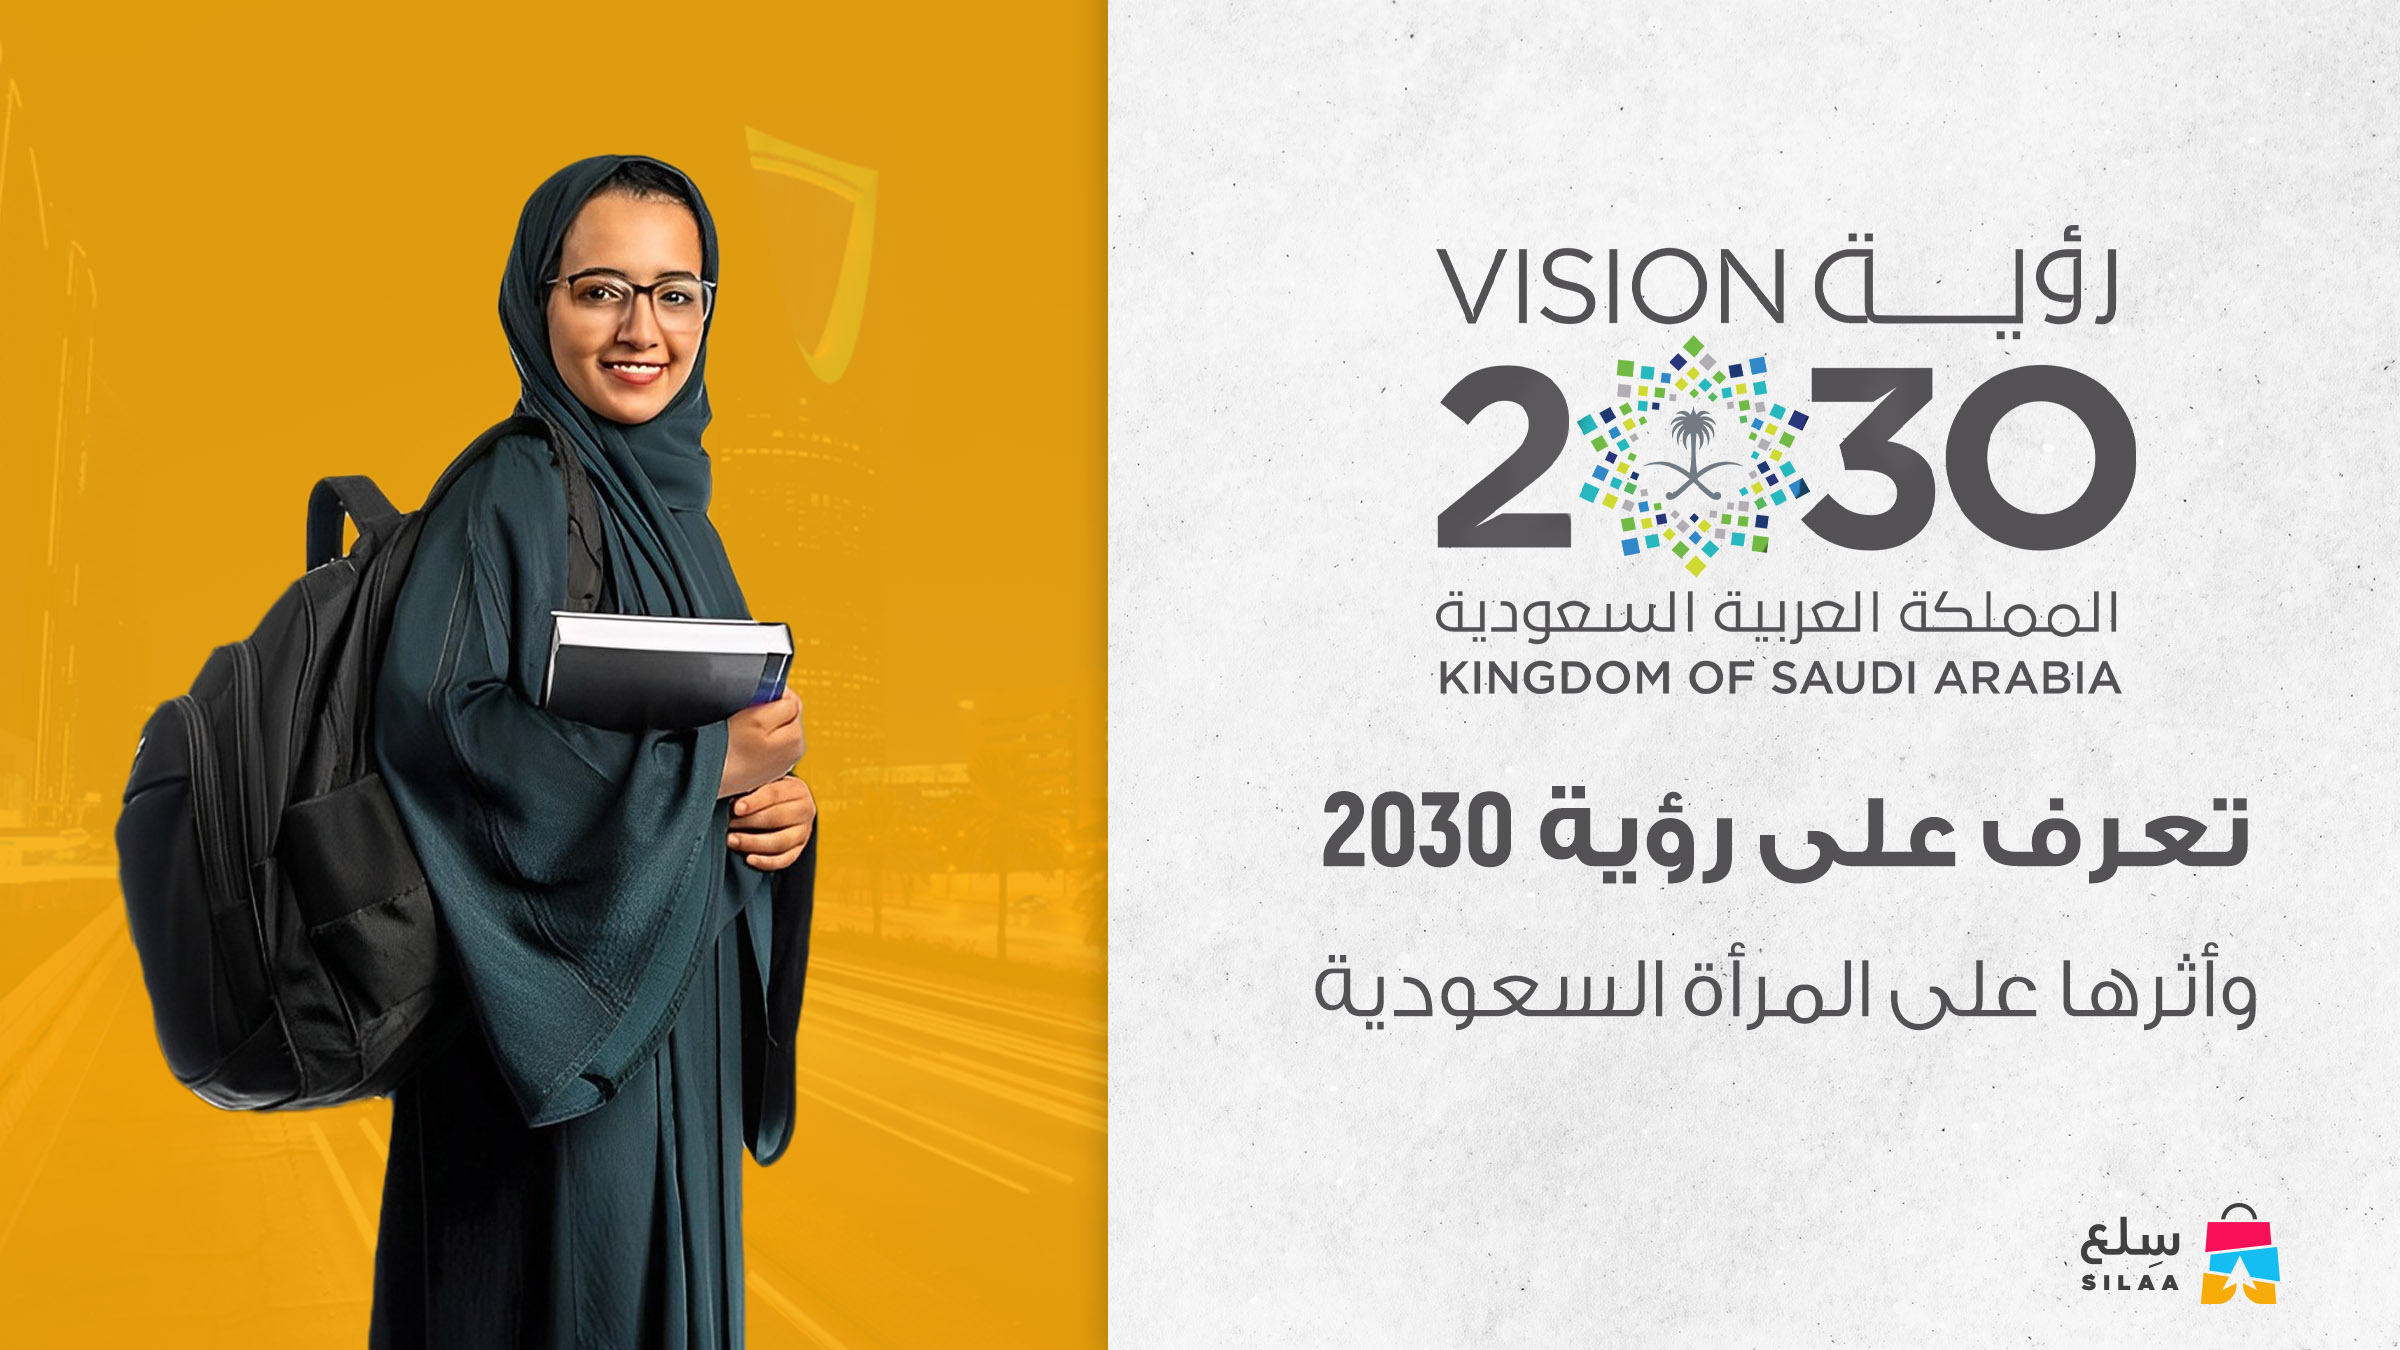 تعرف على رؤية 2030 واثرها على المرأة السعودية